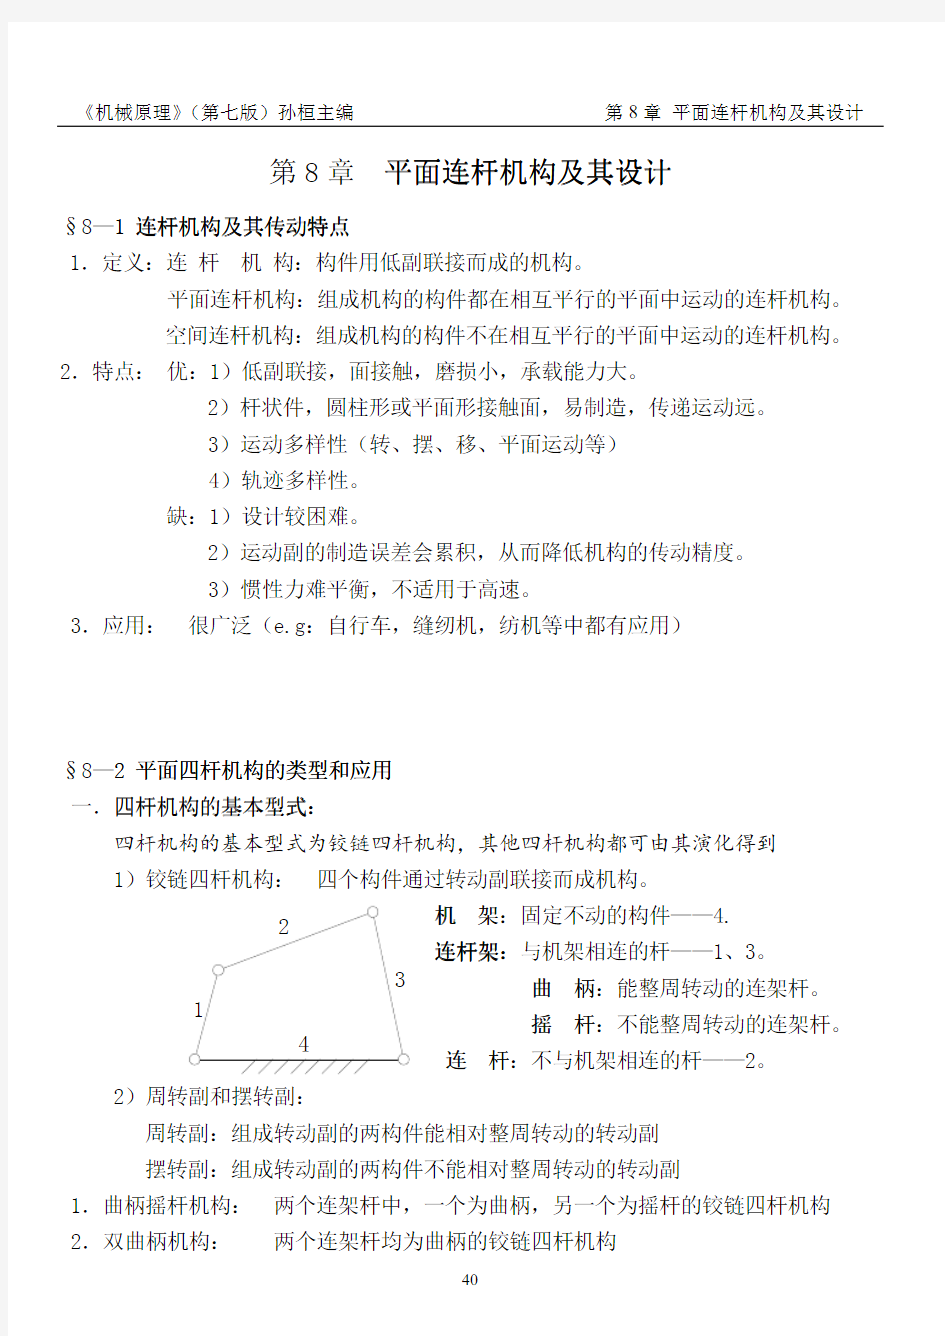 机械原理(PDF)孙桓 复习笔记chapter8